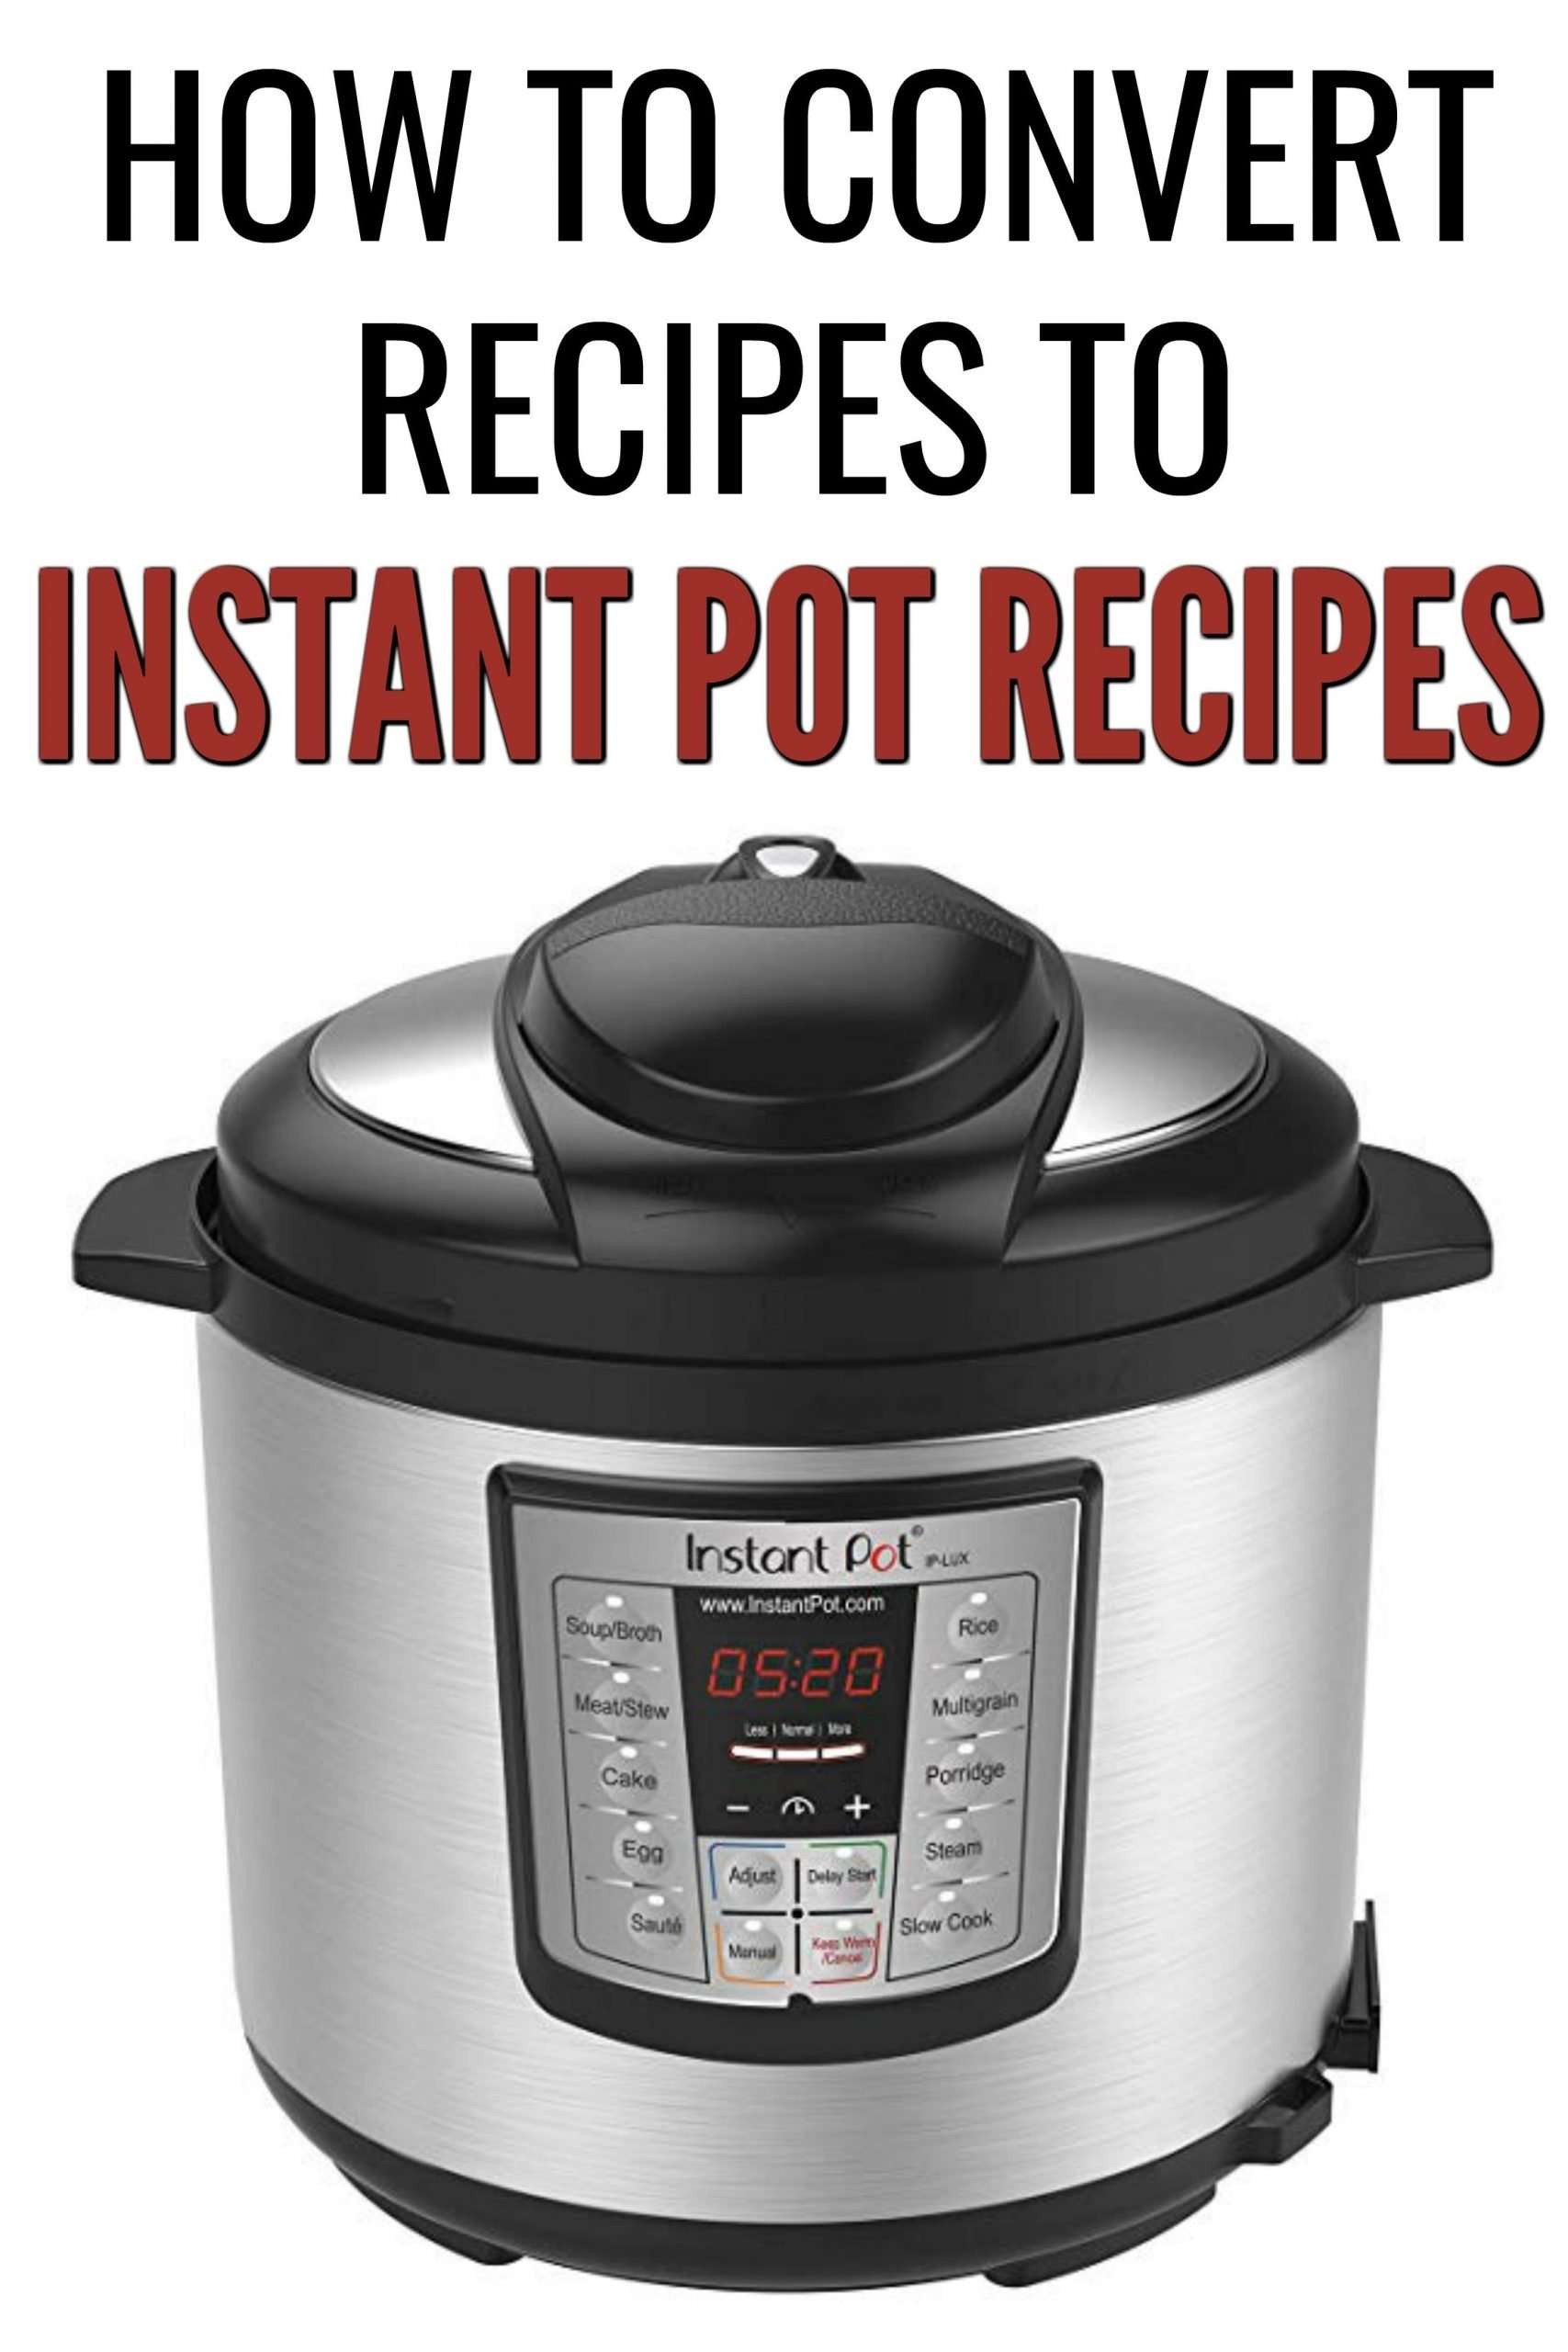 How to Convert Recipes into Instant Pot Recipes (9 Tips ...